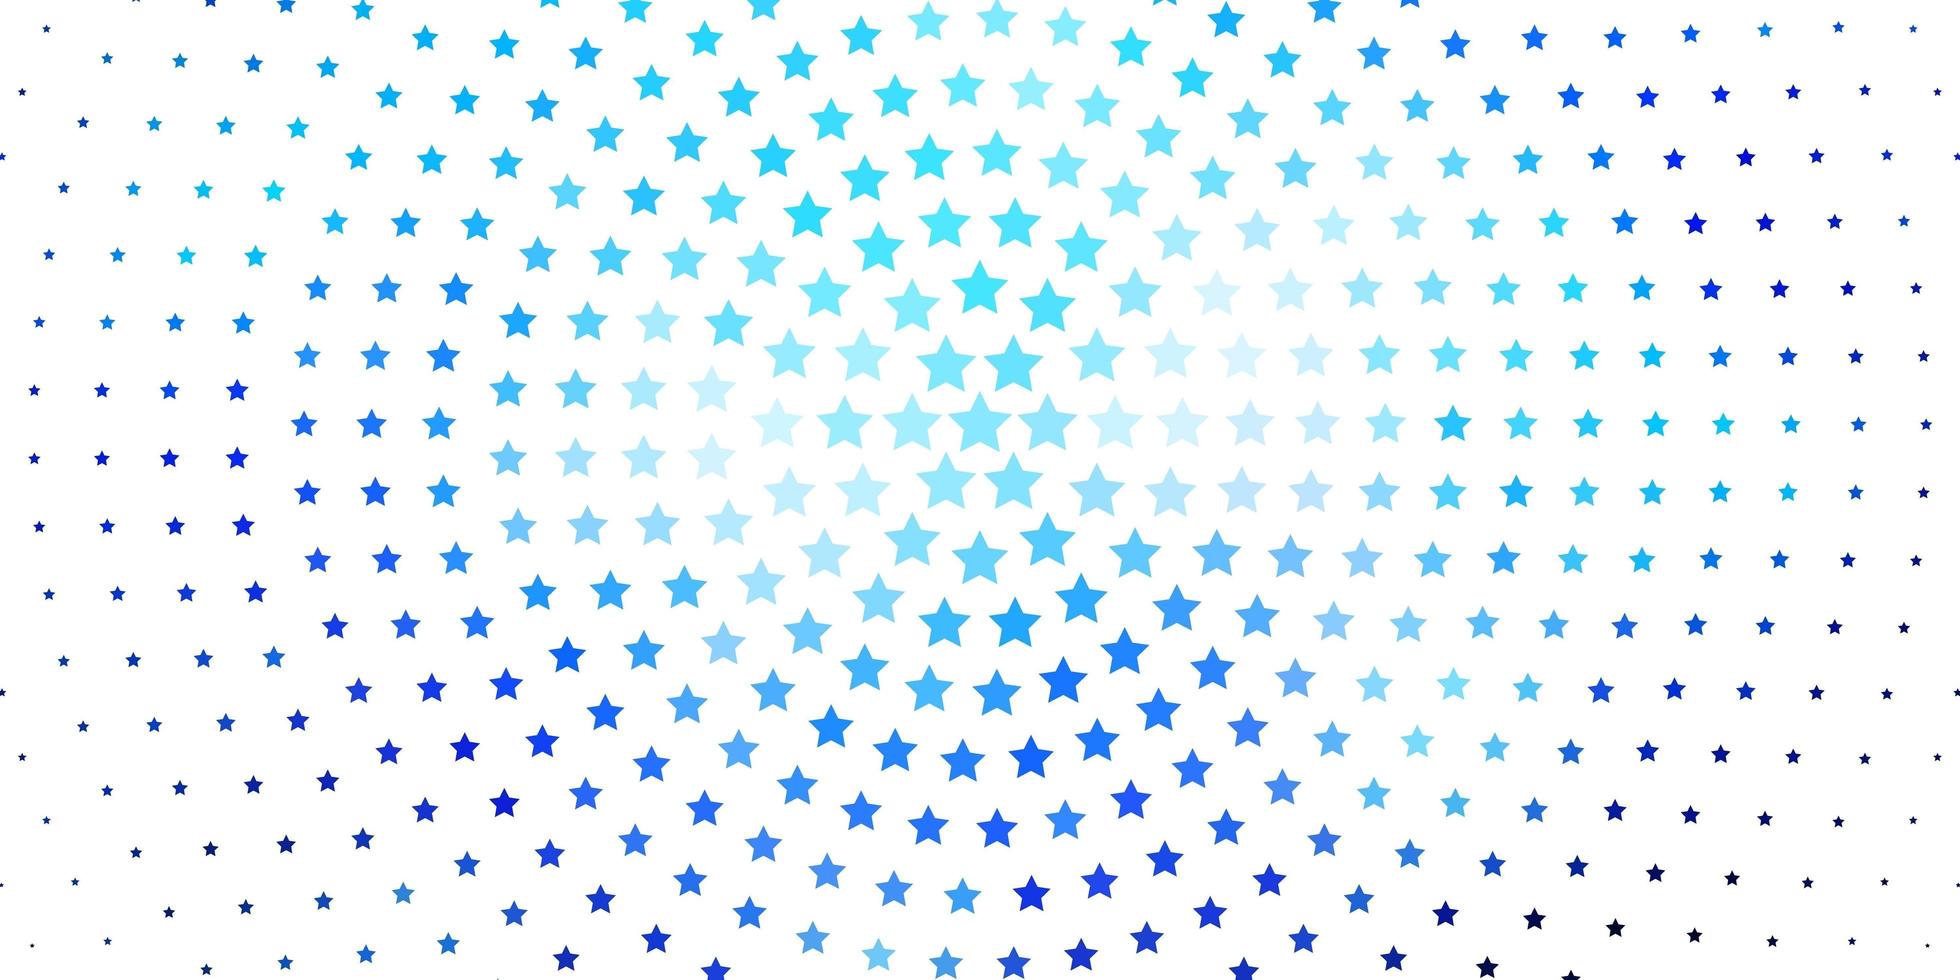 hellblauer Vektorhintergrund mit bunten Sternen bunte Illustration mit abstrakten Steigungssternen bestes Design für Ihr Werbeplakatbanner vektor